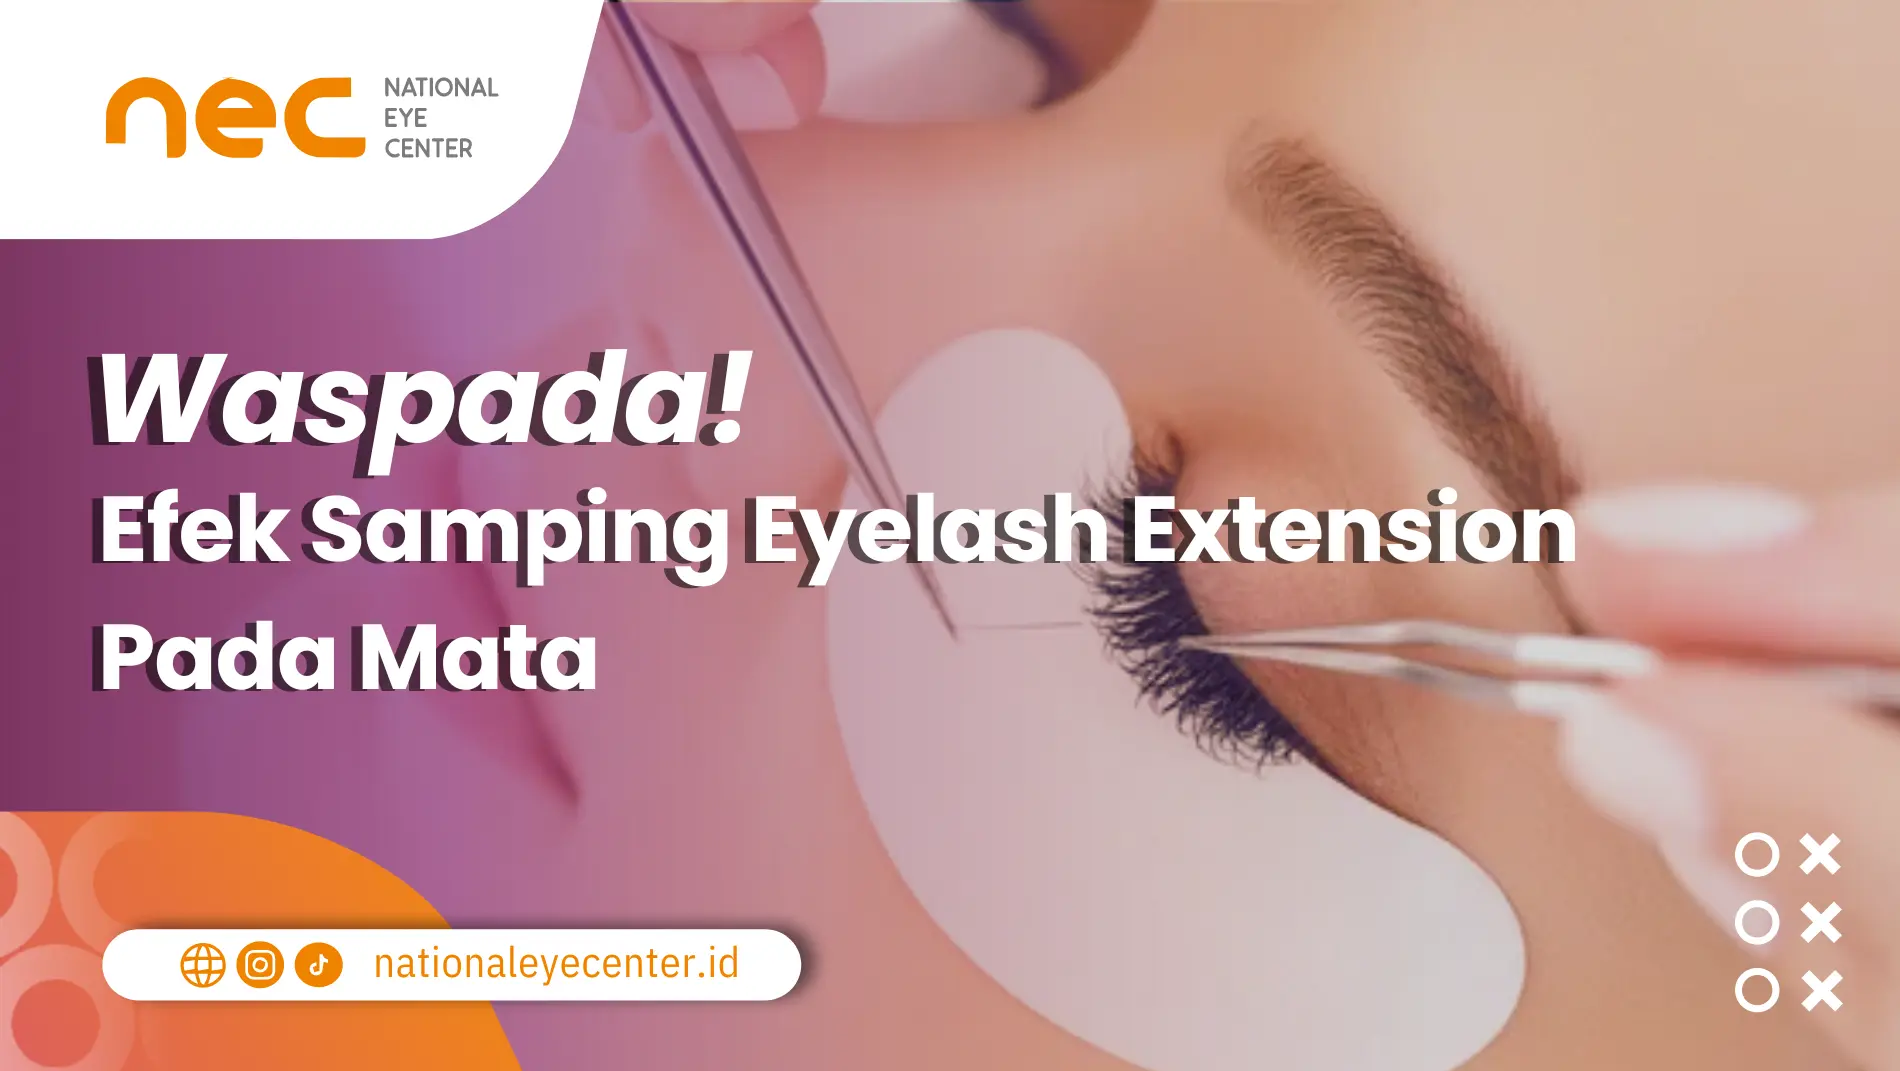 Efek Samping Eyelash Extension: Seseorang sedang menjalani pemasangan eyelash extension.